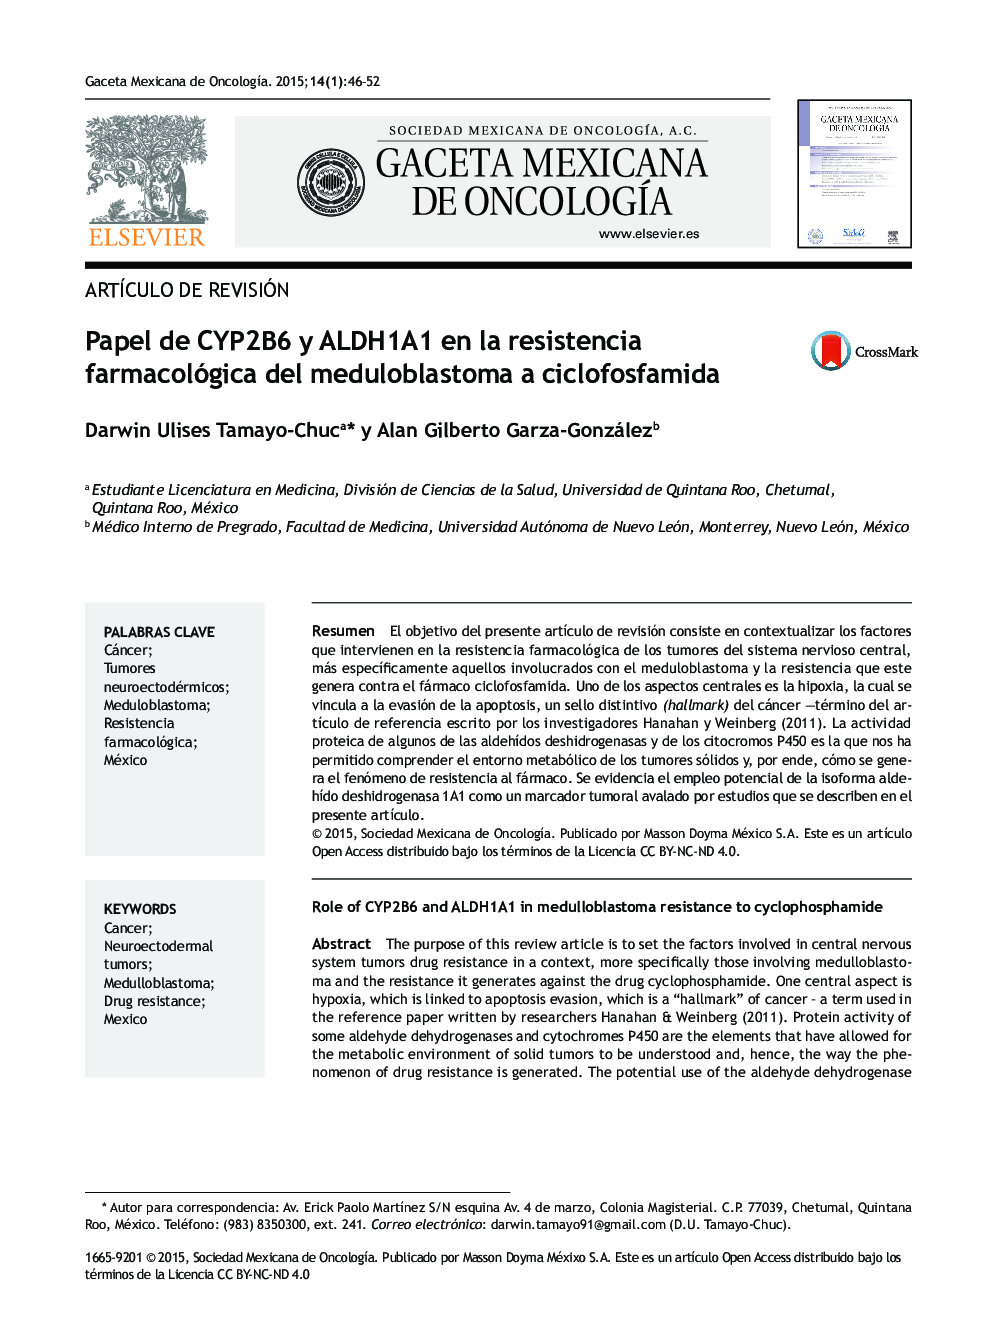 Papel de CYP2B6 y ALDH1A1 en la resistencia farmacológica del meduloblastoma a ciclofosfamida